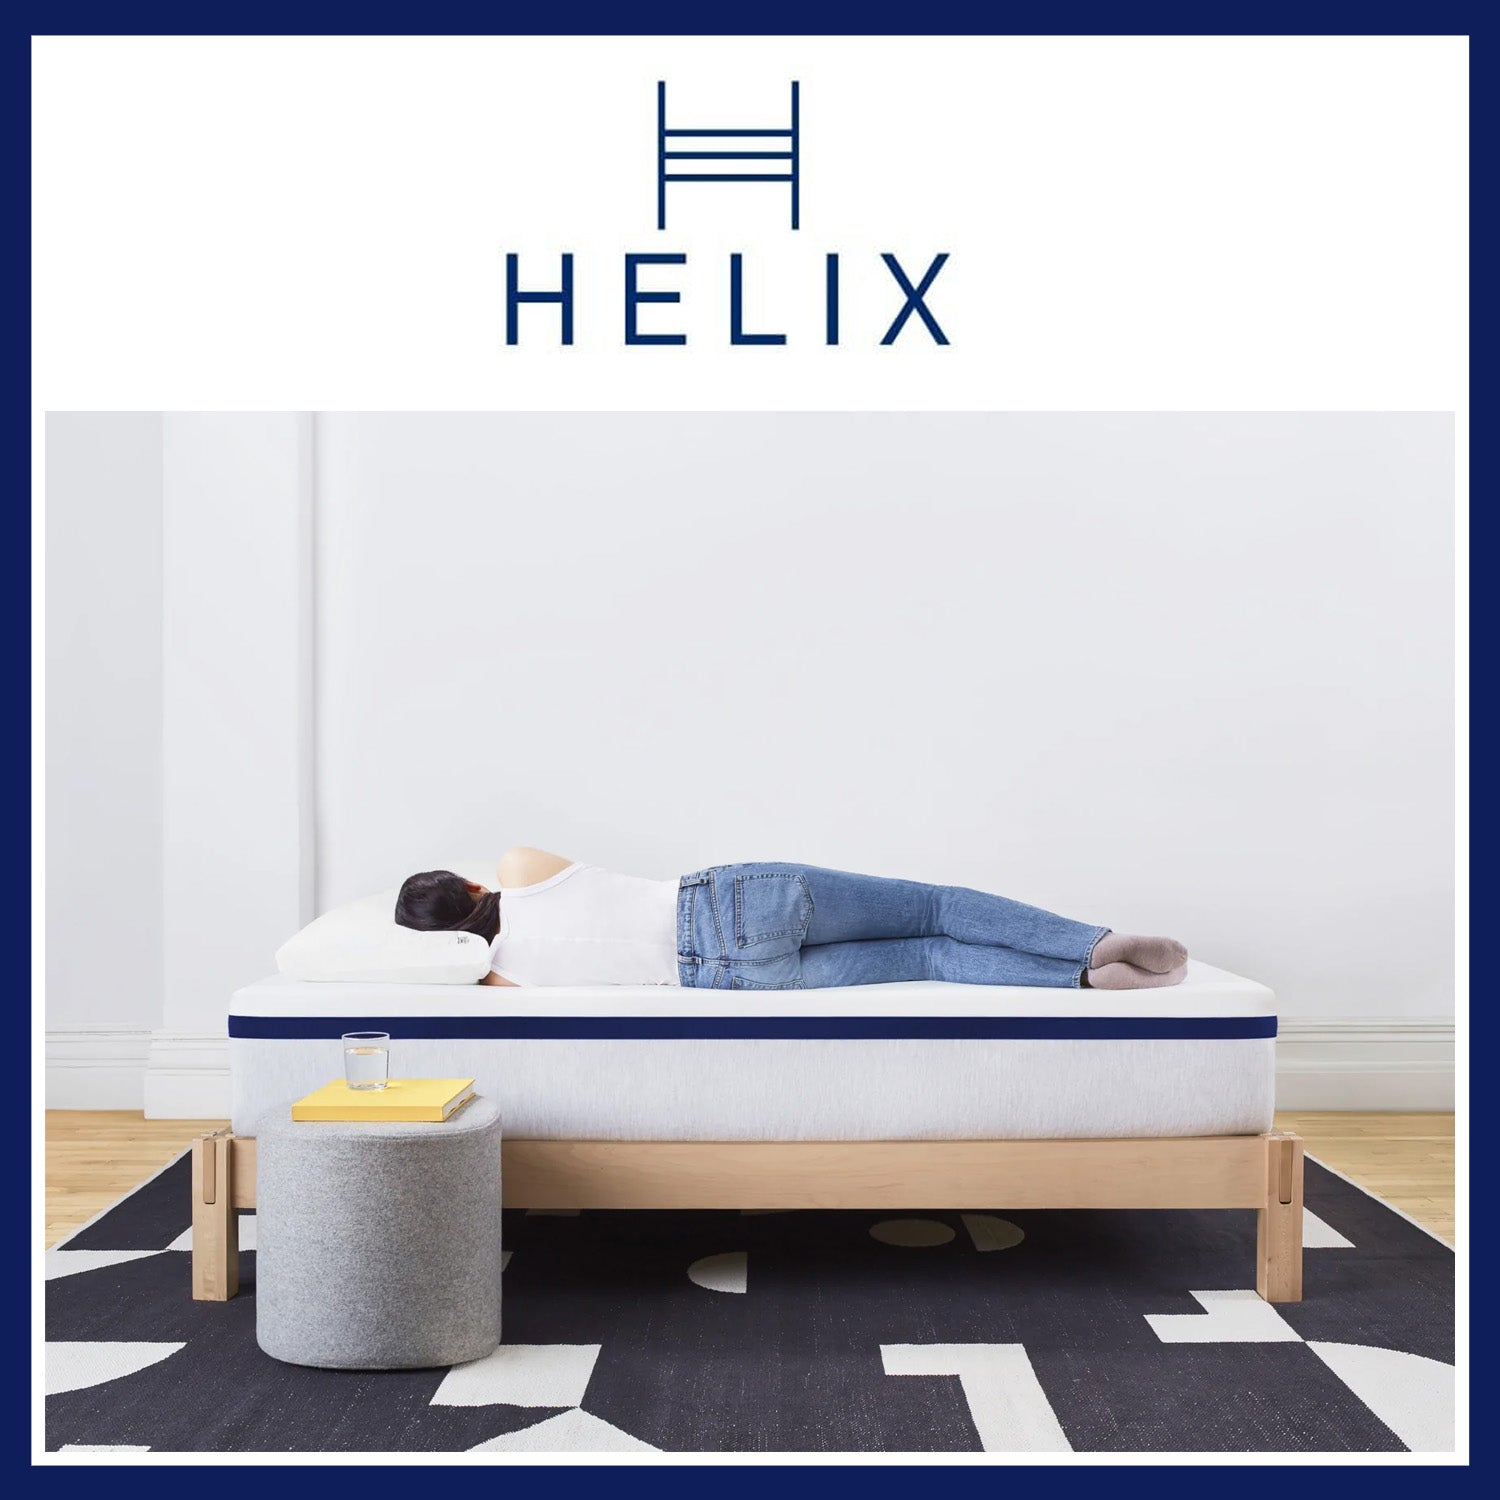 Helix Midnight Mattress 20% + 2 Free Dream Pillows+ Spring Savings